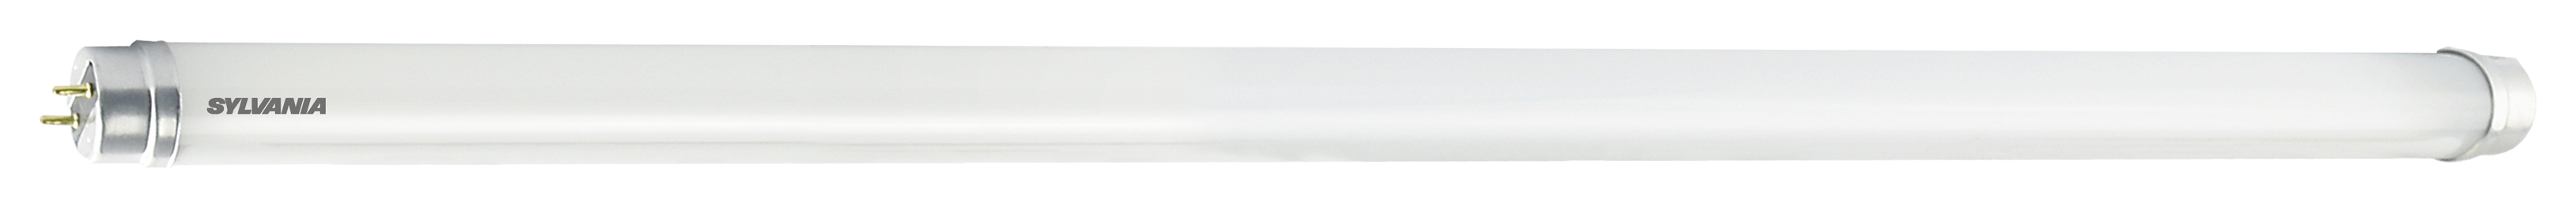 Image of Sylvania 5ft T8 Cool White LED Tube Light